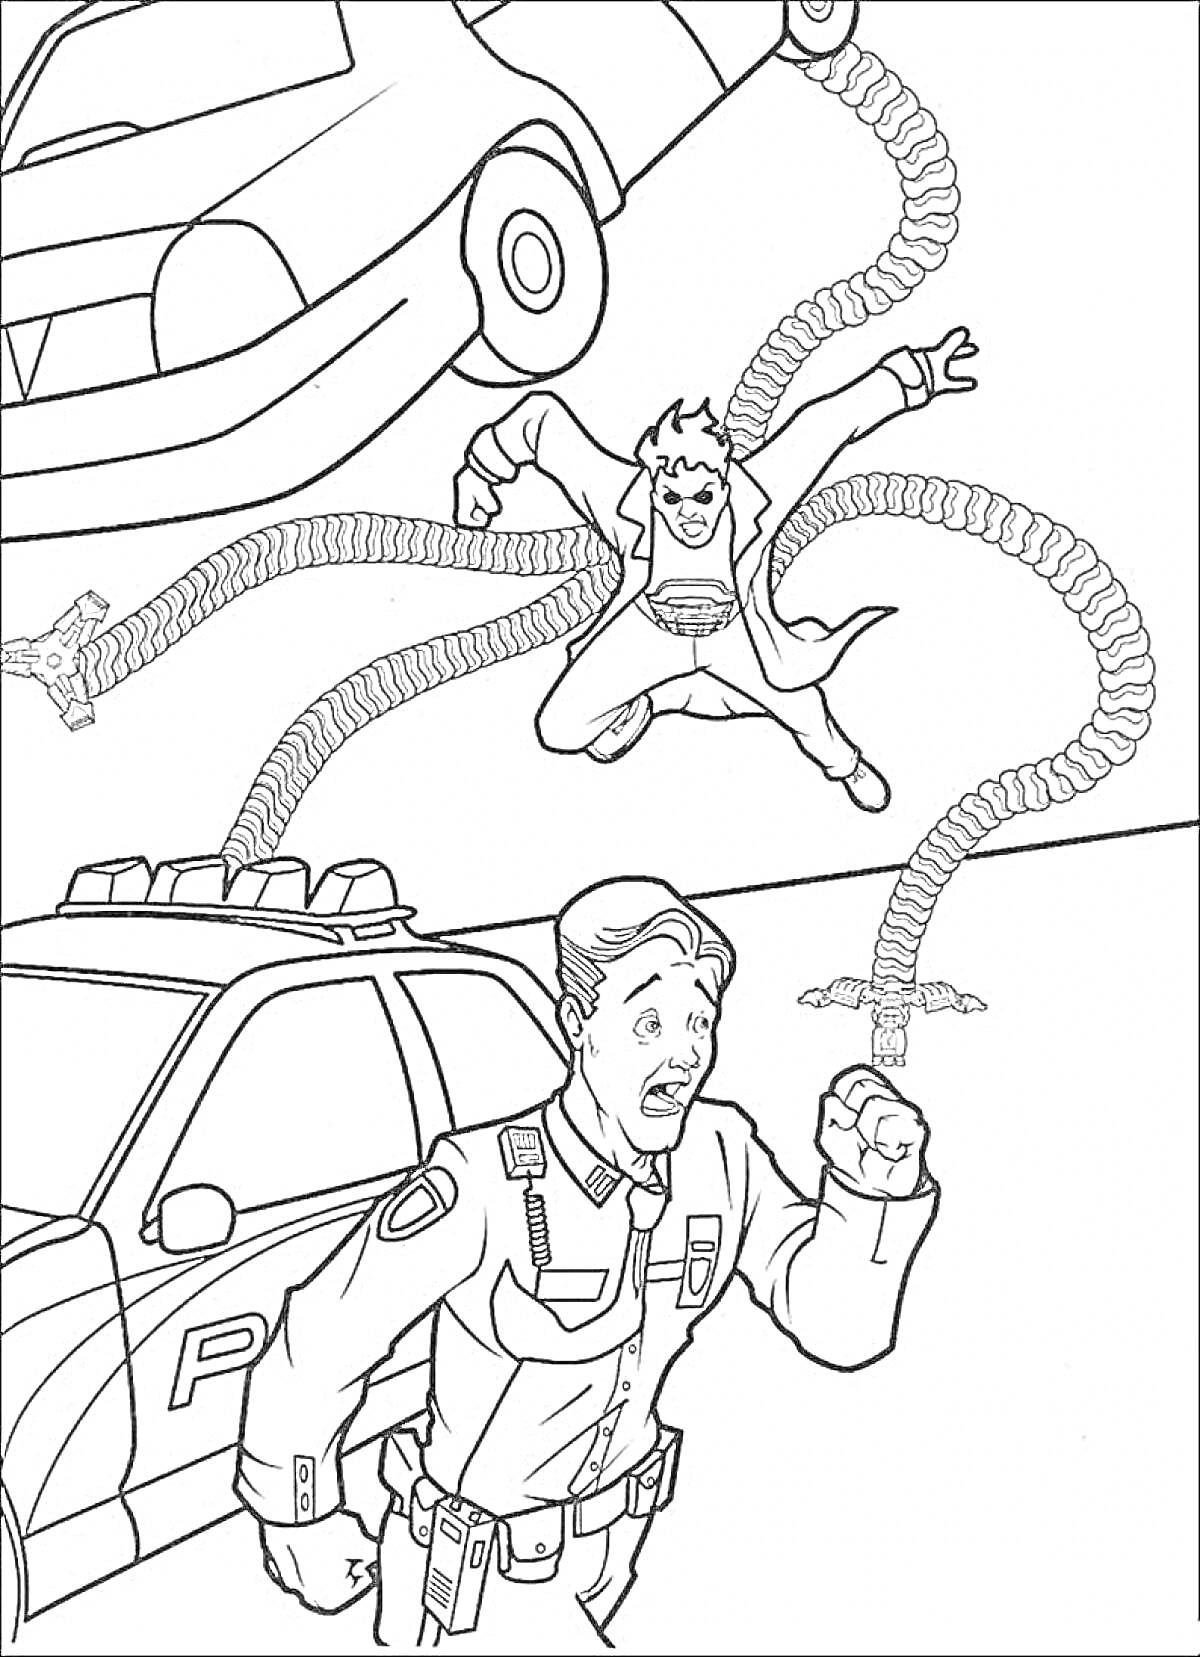 Раскраска Доктор Осьминог, полицейский, автомобиль, механические щупальца